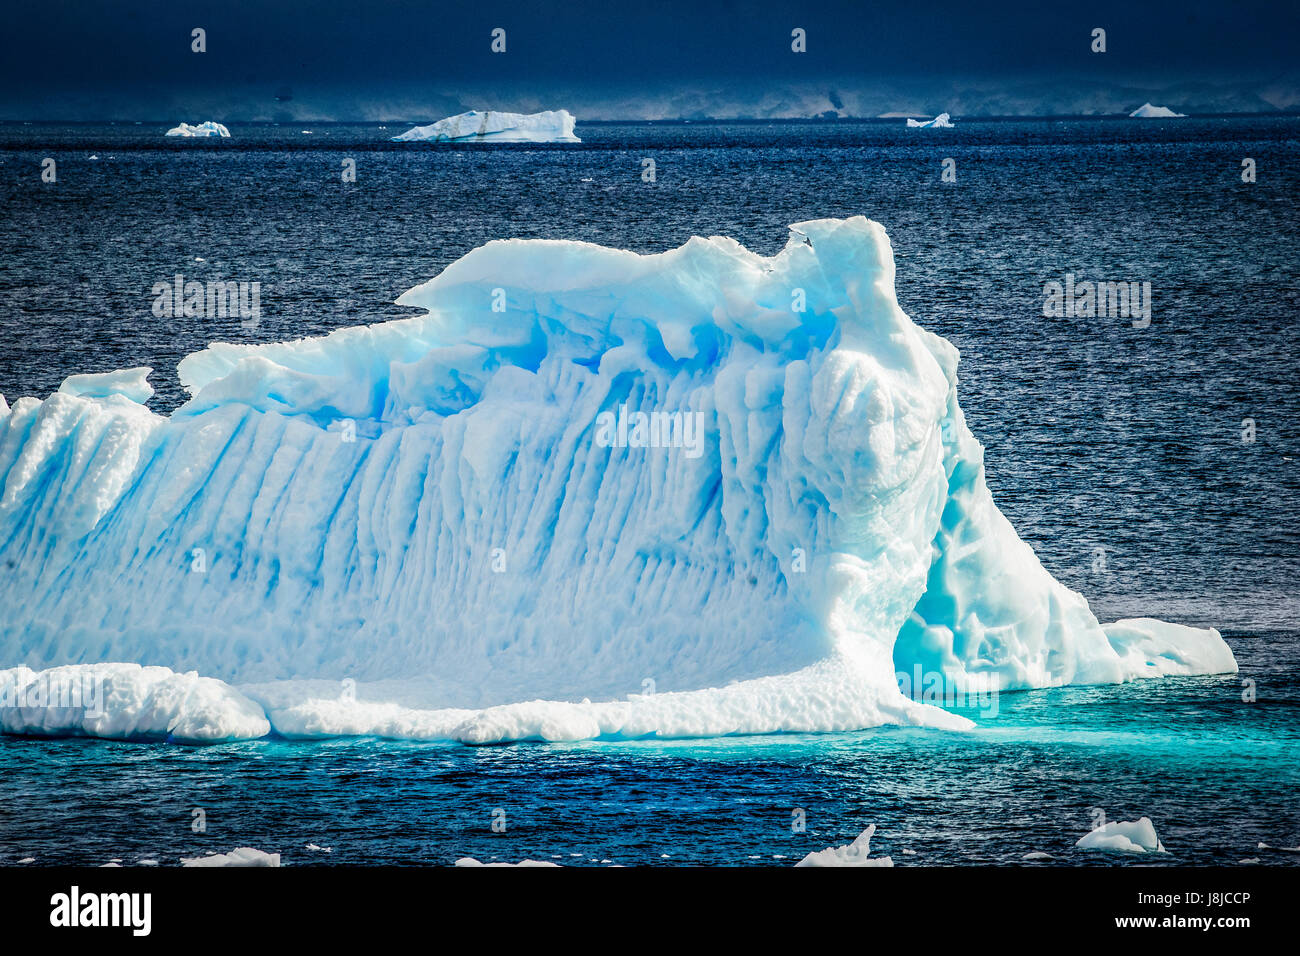 Un rayon de lumière brille directement sur cet iceberg un peu bergy sous un ciel orageux. Banque D'Images